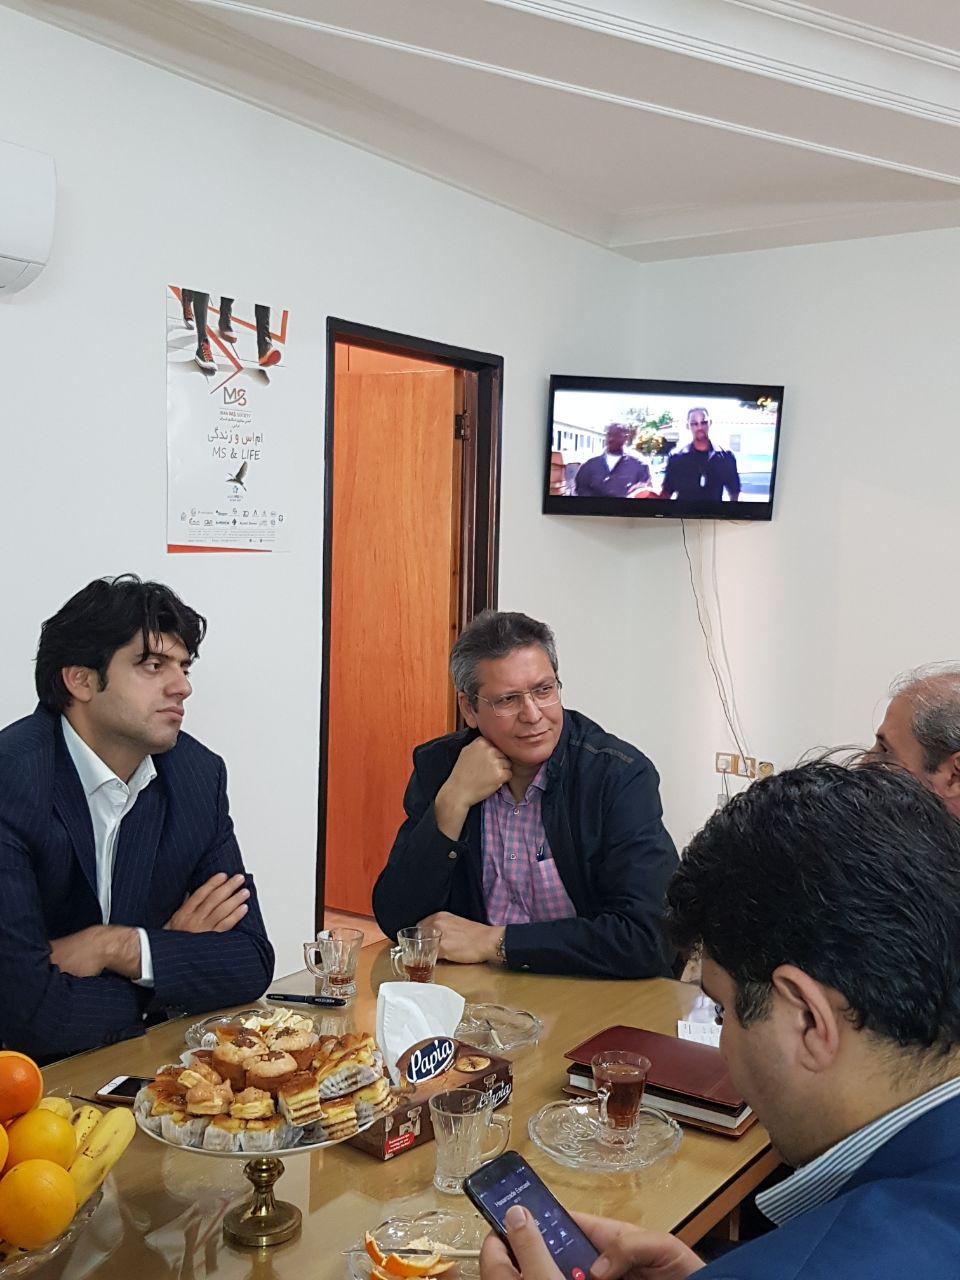 نشست صمیمی با حضور دکتر دامادی نماینده محترم ساری در دفتر انجمن - 12 آذر ماه 1396